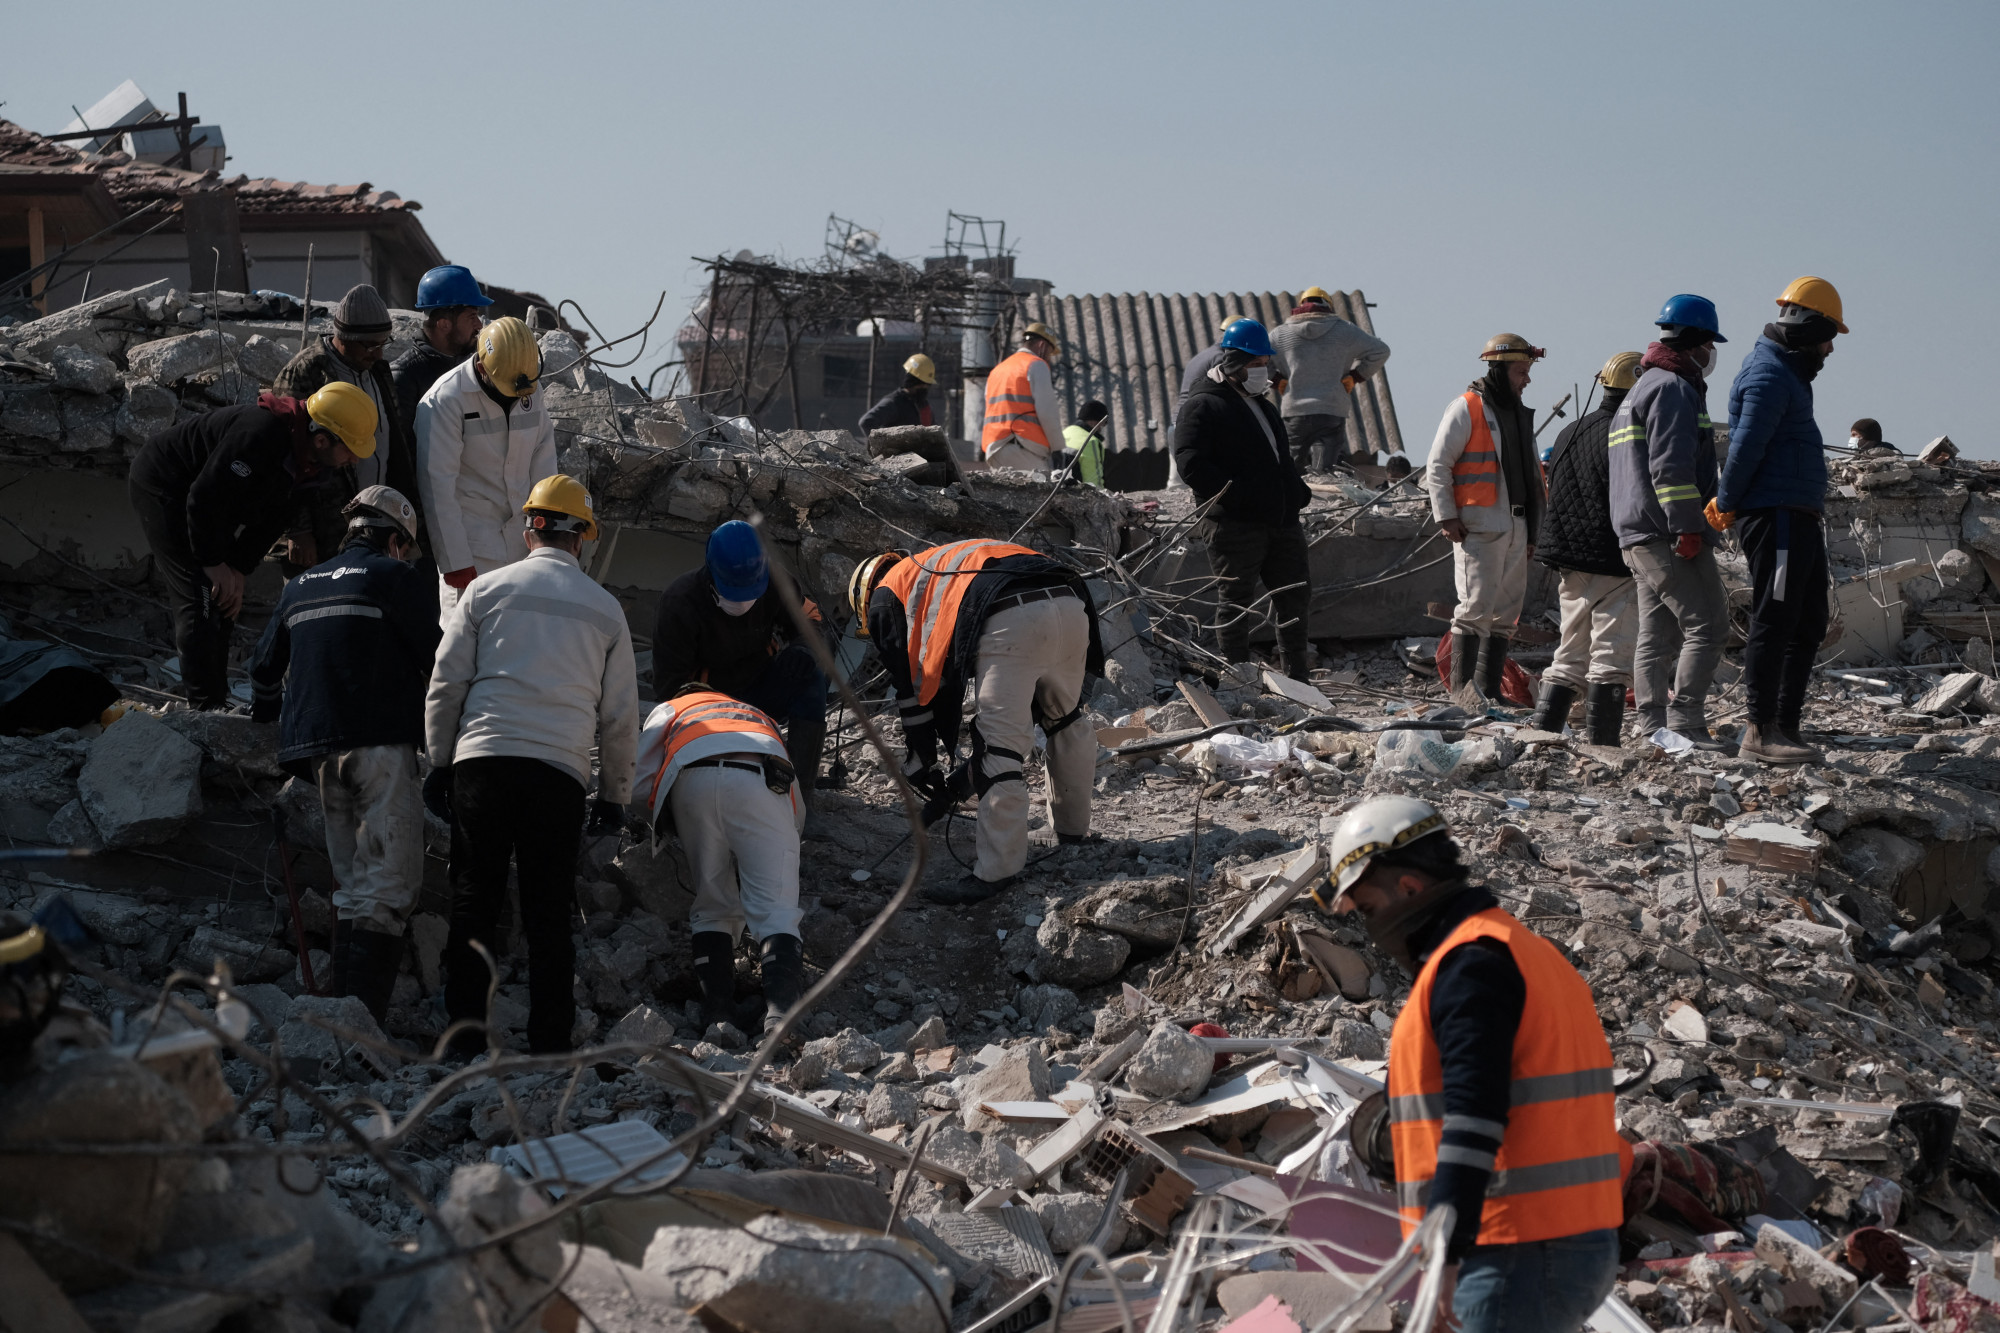 Kilenc nappal a földrengés után újabb túlélőket találtak a romok alatt Törökországban